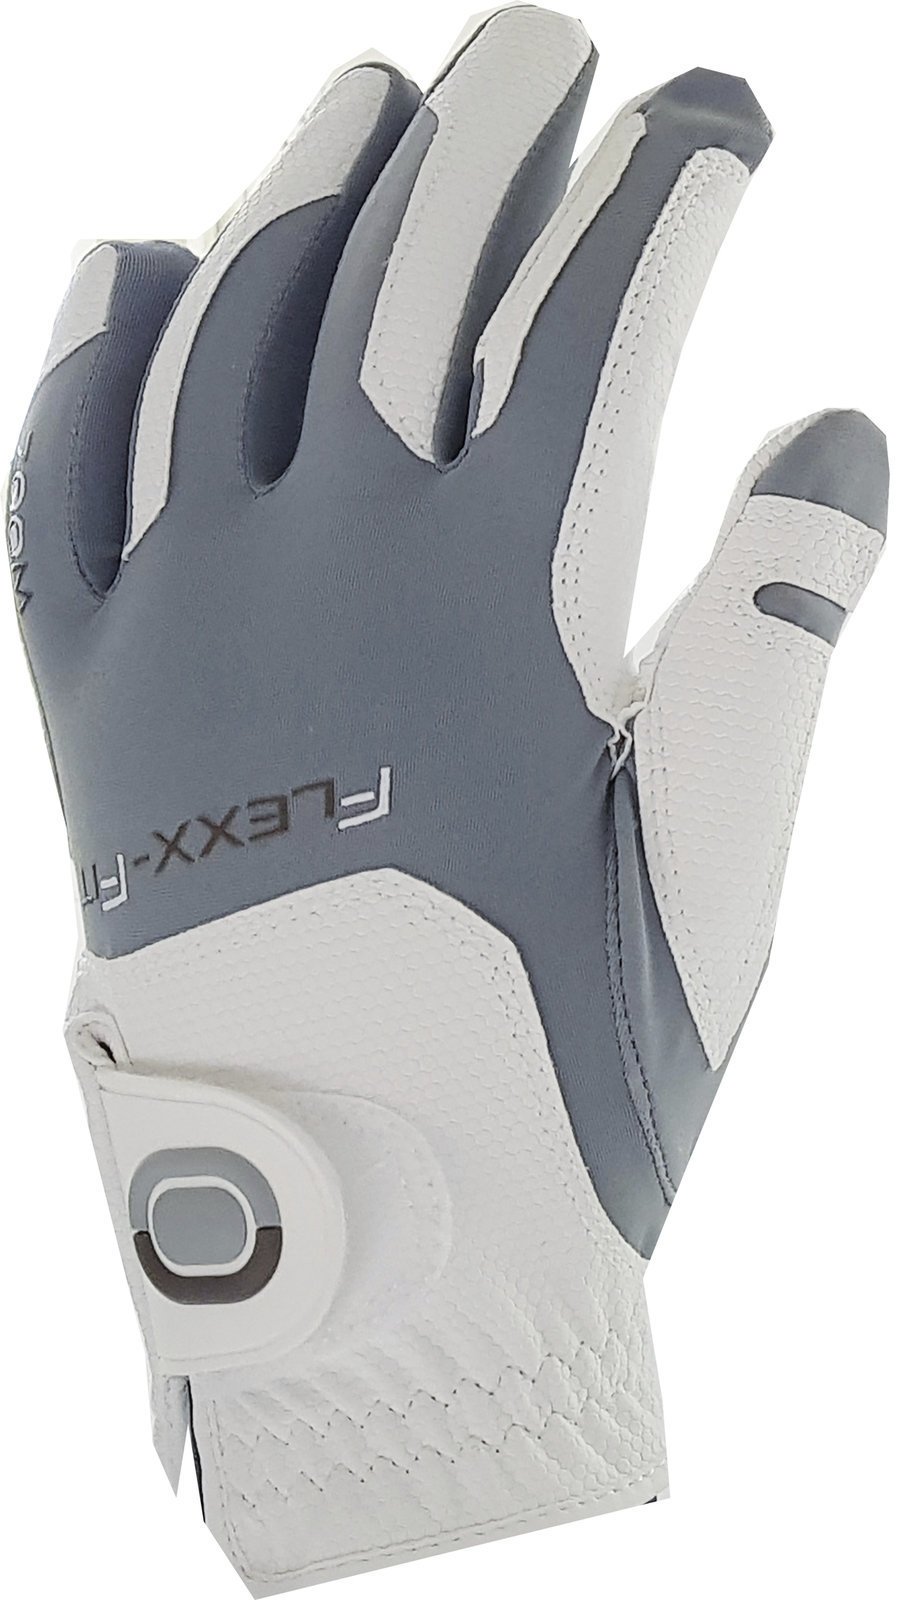 Rokavice Zoom Gloves Weather Womens Golf Glove White/Silver LH